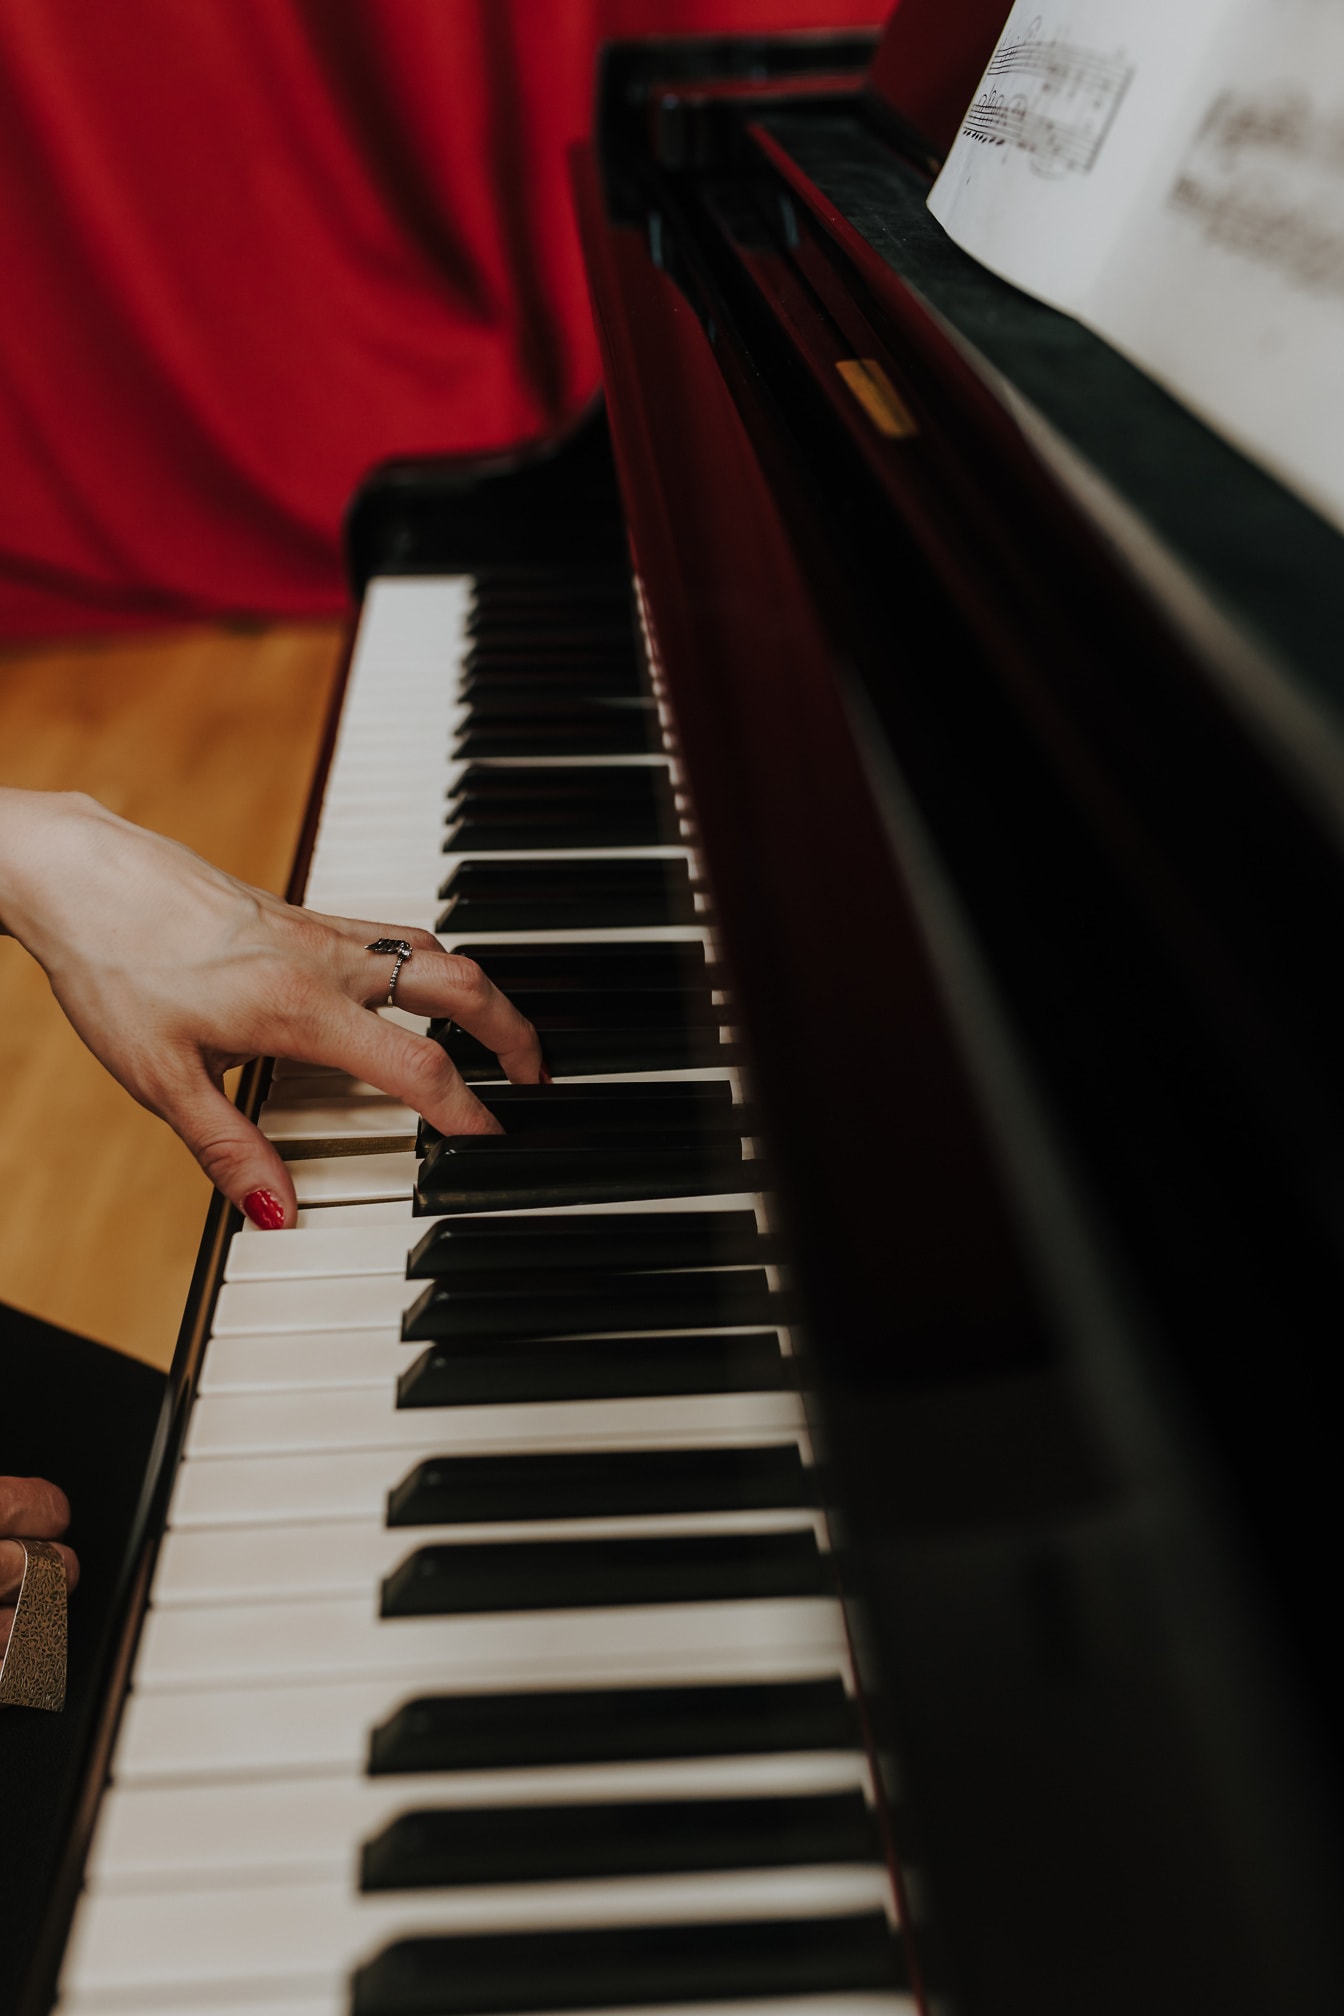 Nærbillede af hånden med guldring og rød neglelak, der spiller klaver